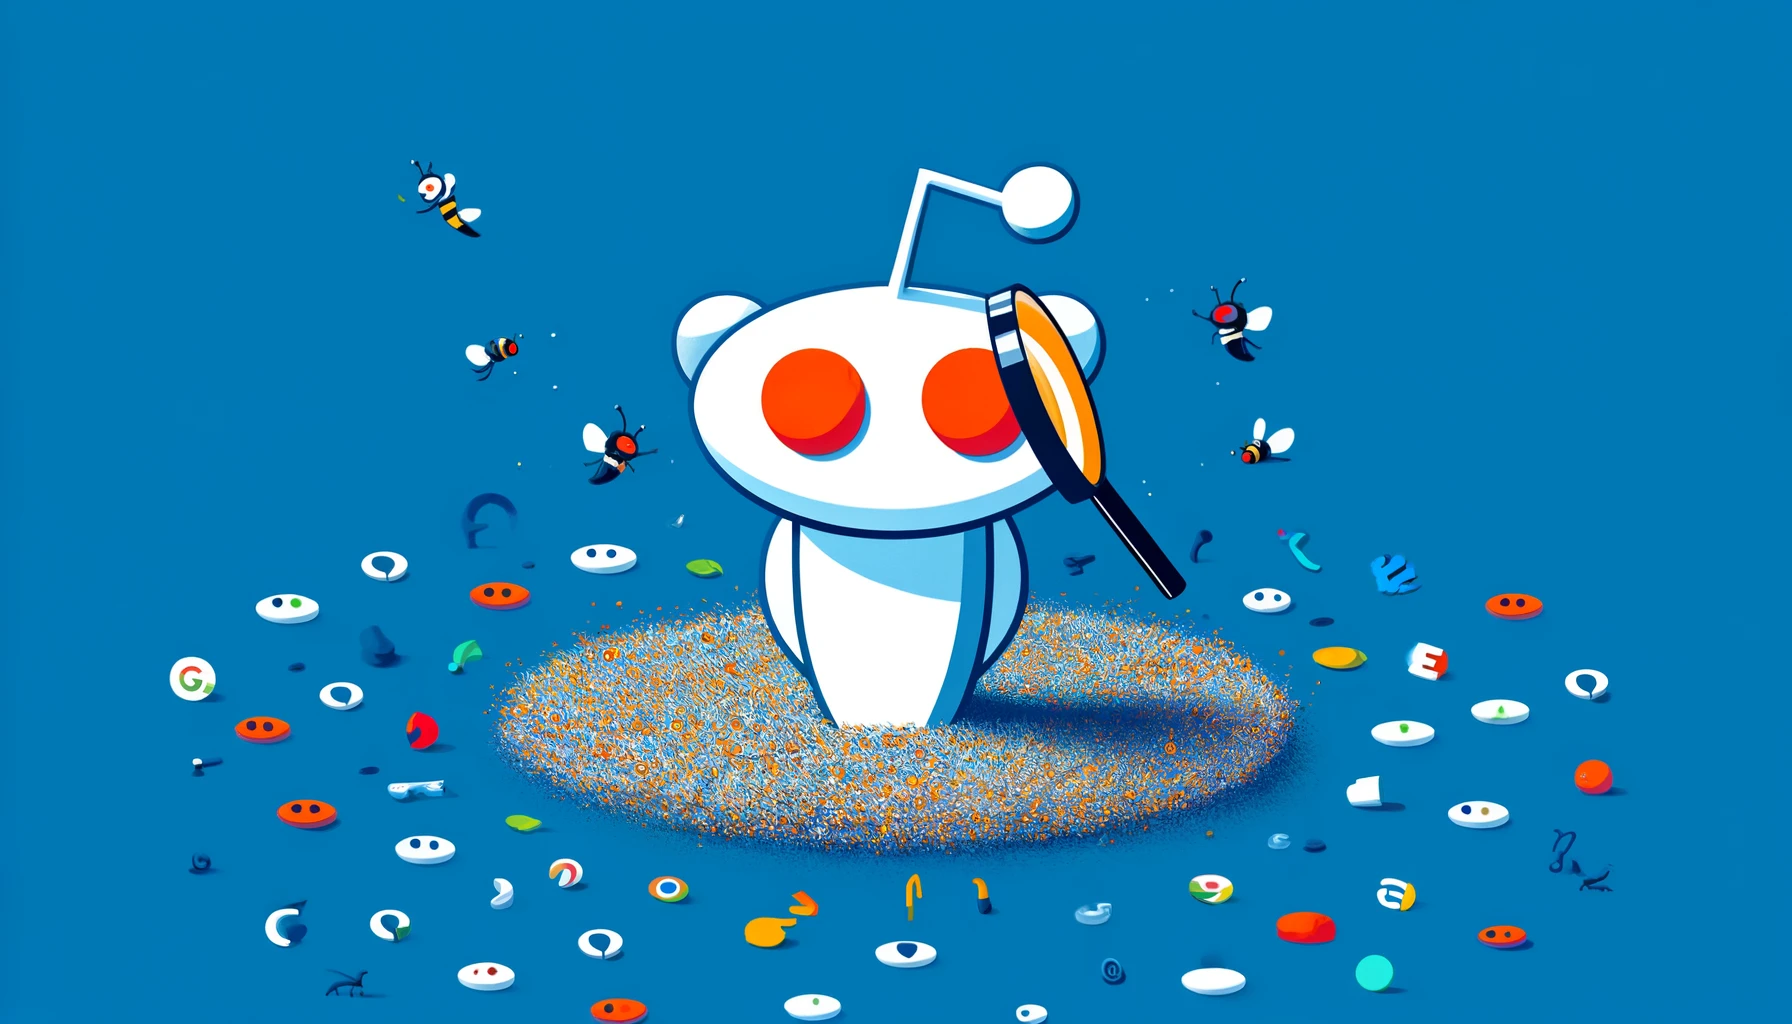 El monopolio de Búsqueda de Google en Reddit